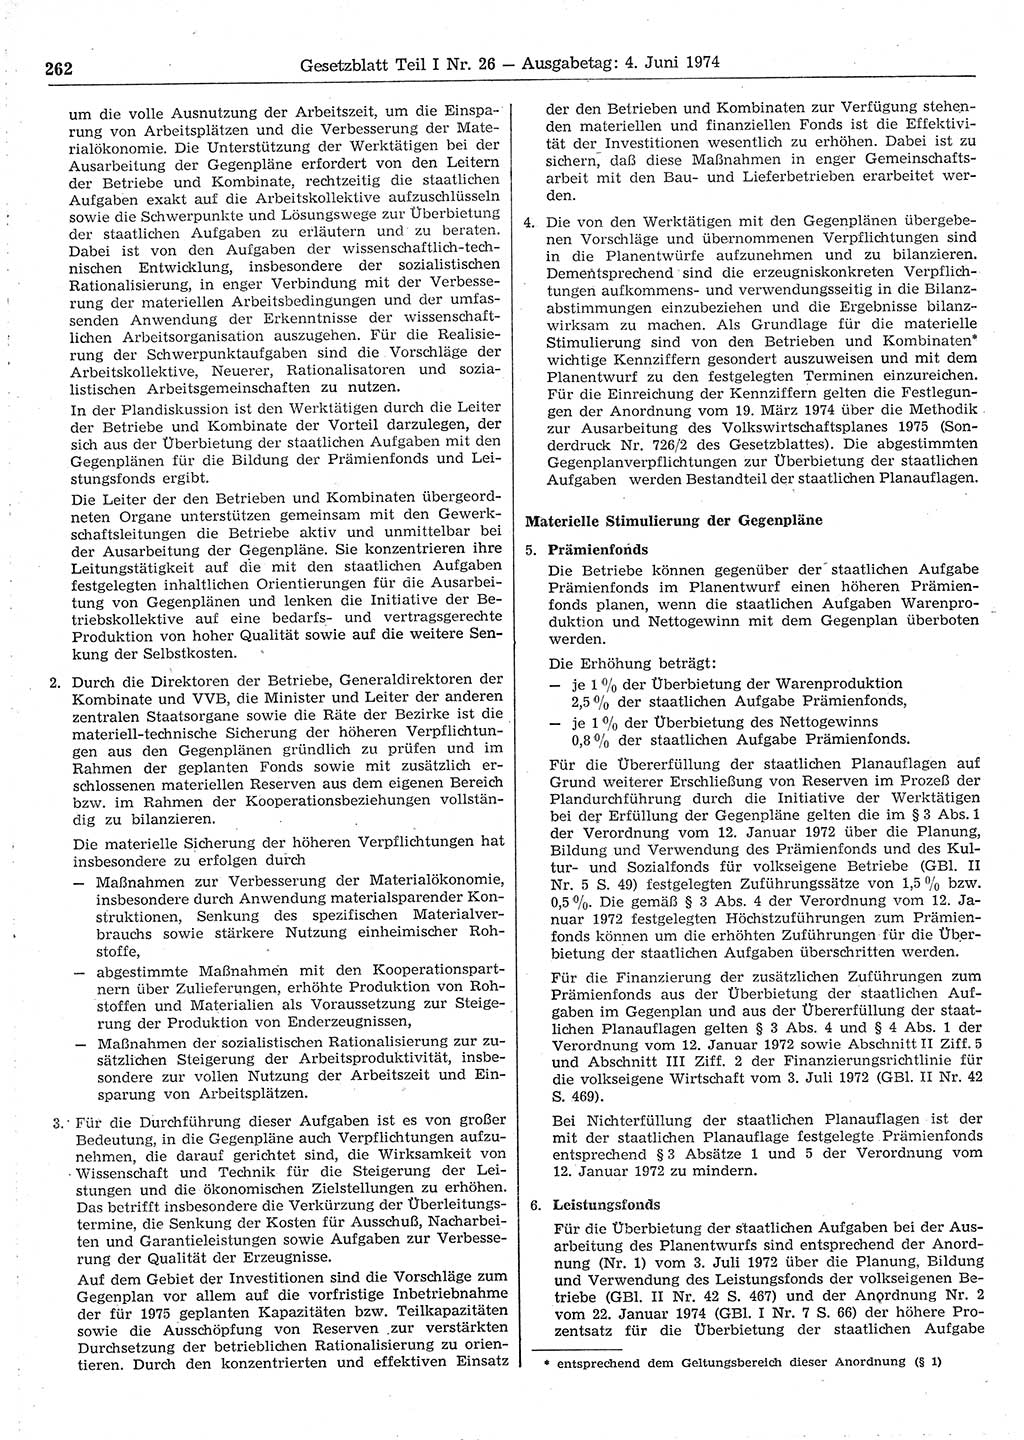 Gesetzblatt (GBl.) der Deutschen Demokratischen Republik (DDR) Teil Ⅰ 1974, Seite 262 (GBl. DDR Ⅰ 1974, S. 262)